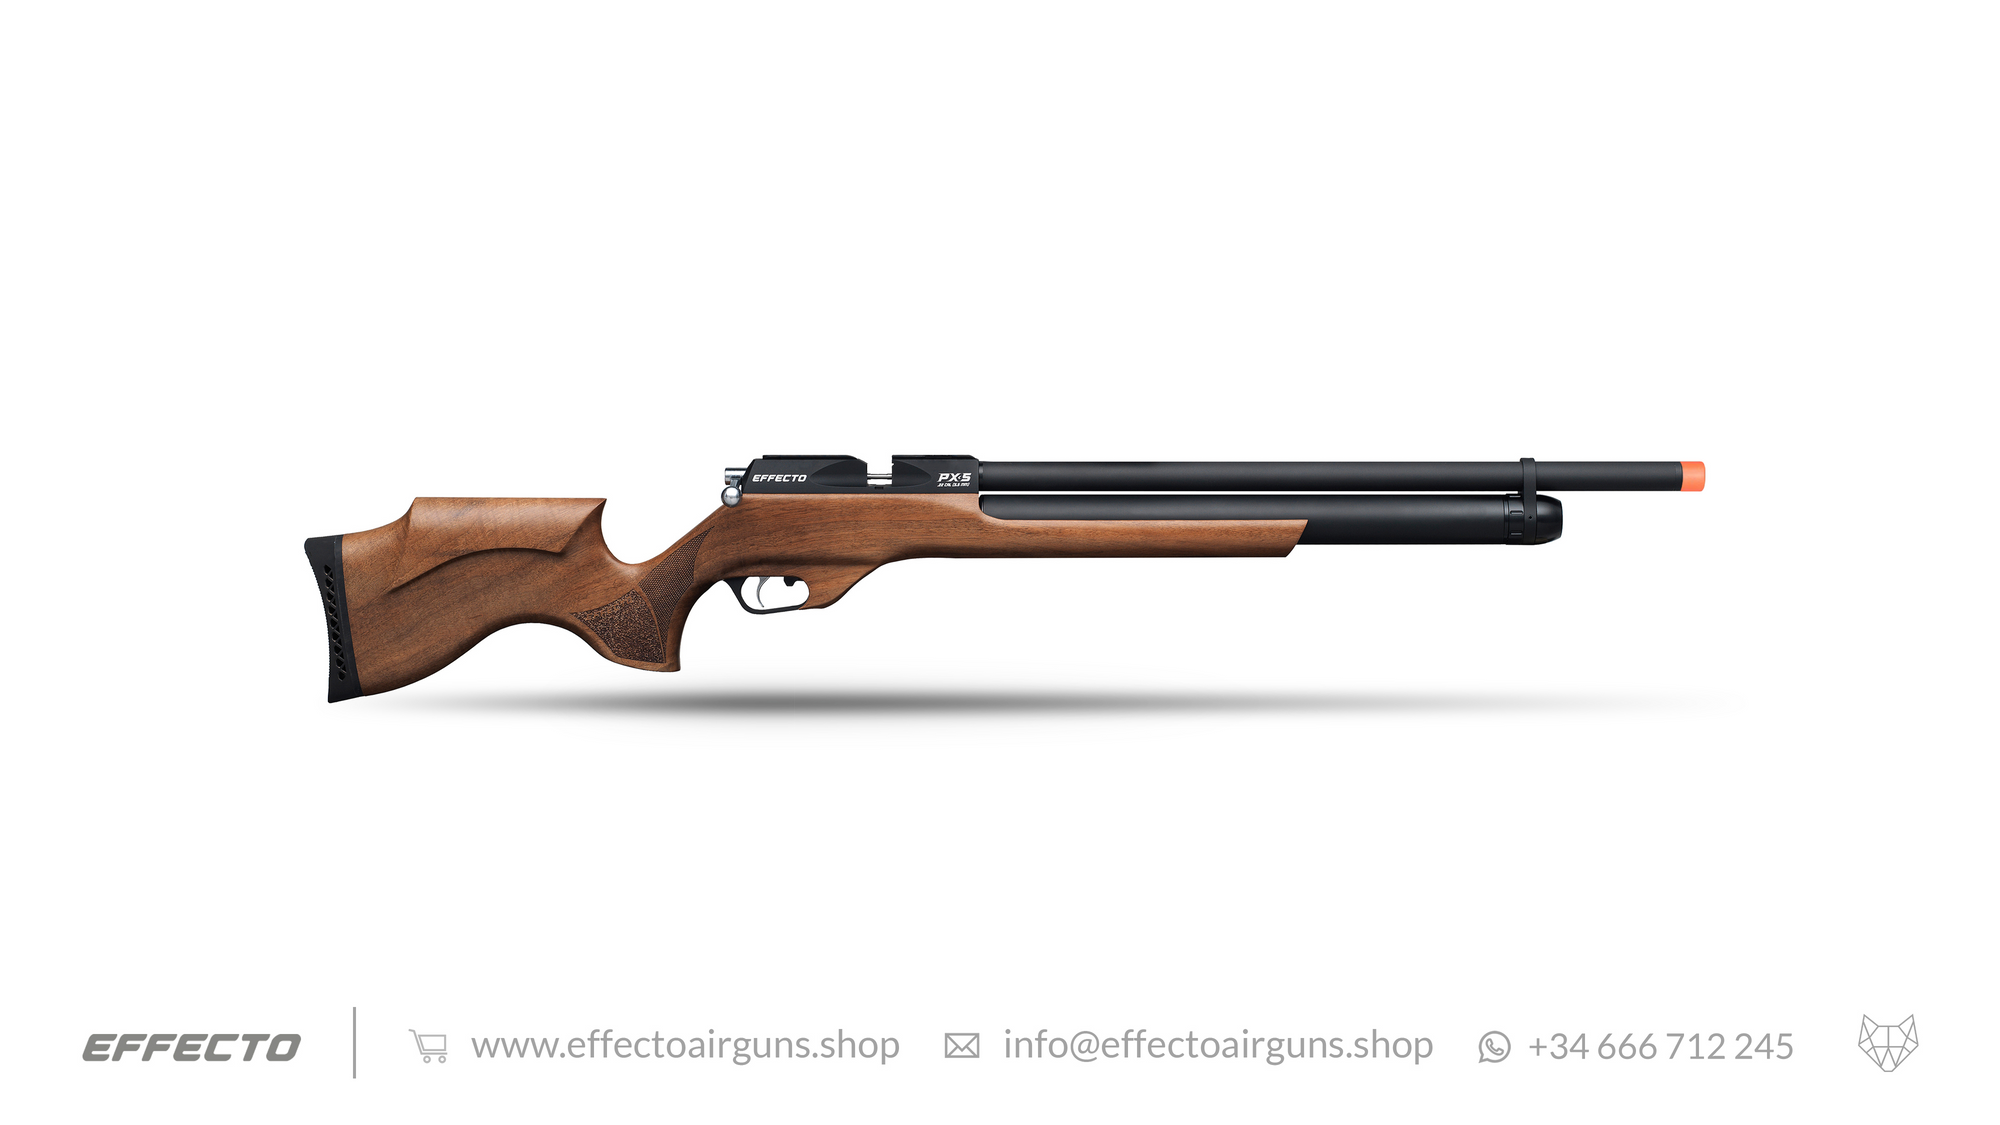 Wooden Airgun PX-5 Standard in laminated orange side view